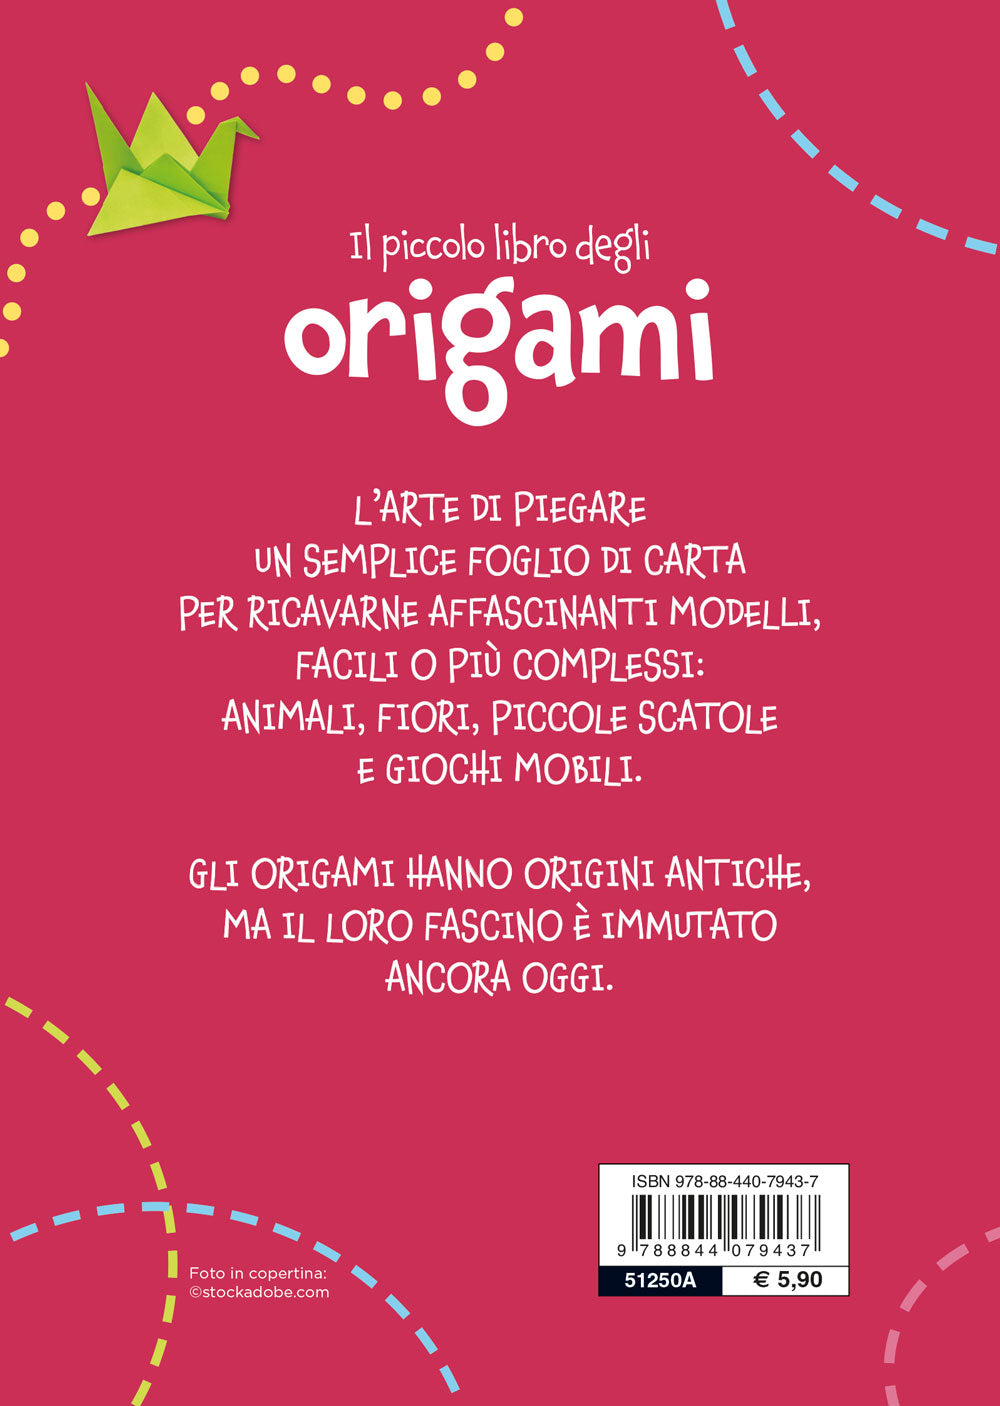 Il piccolo libro degli origami